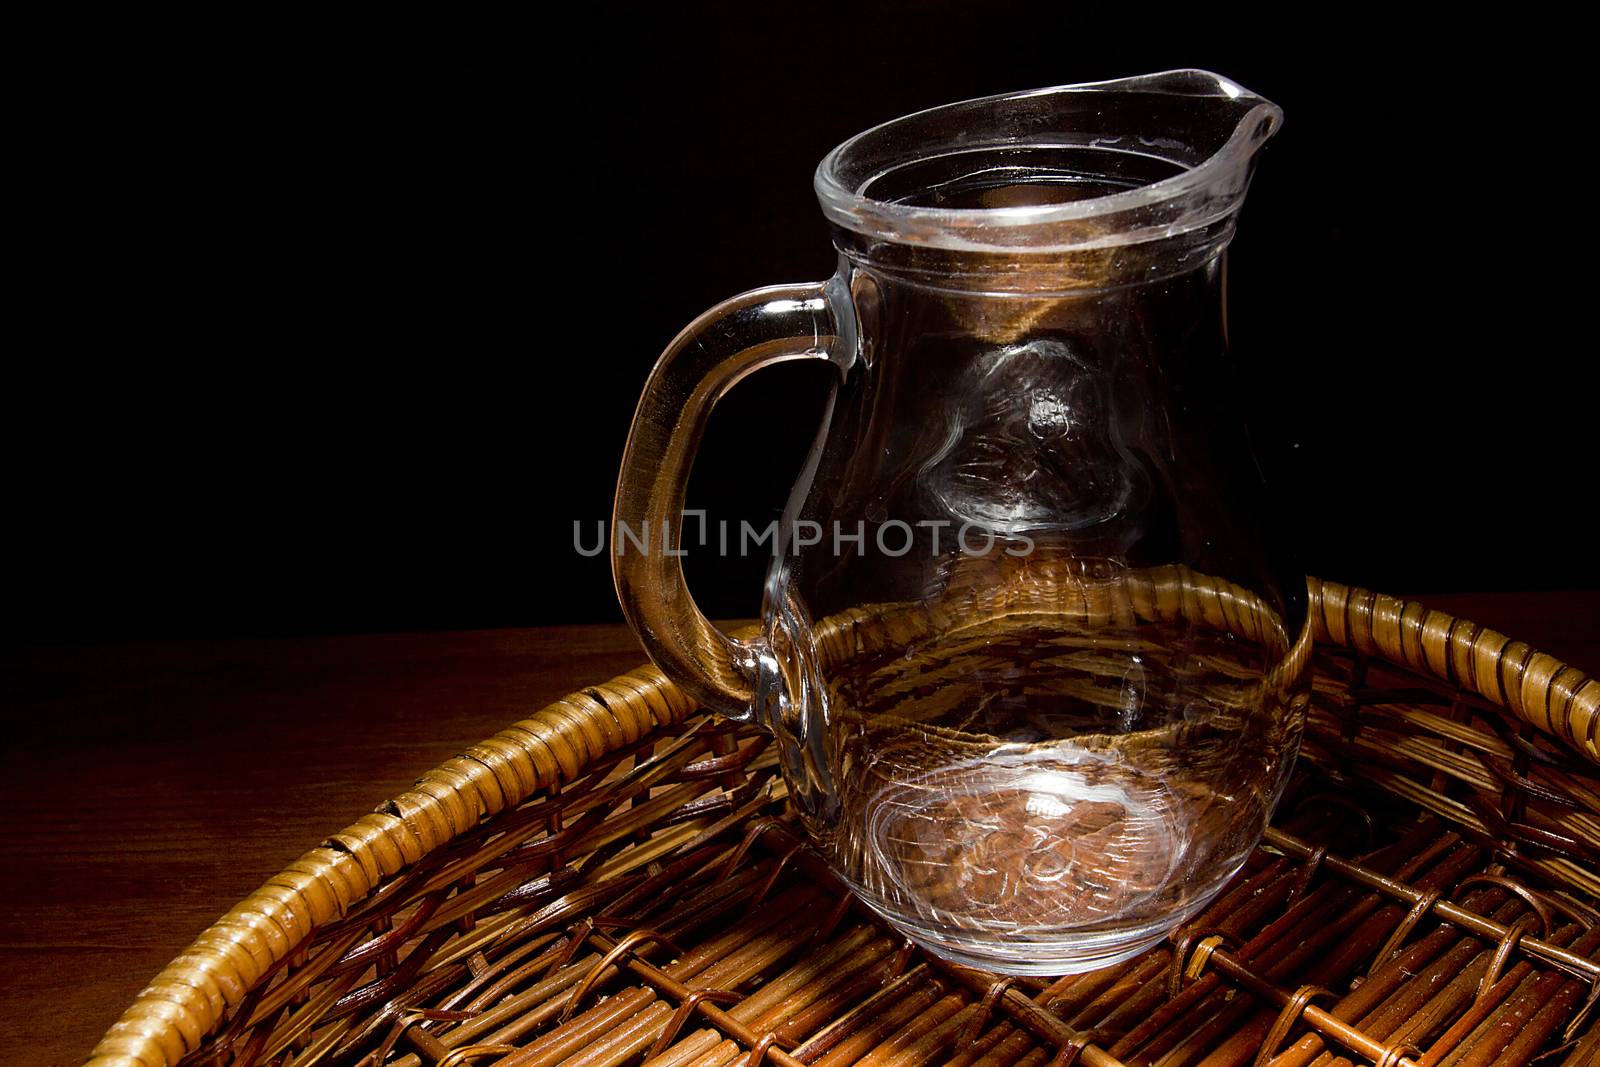 Empty glass jug in a wicker basket